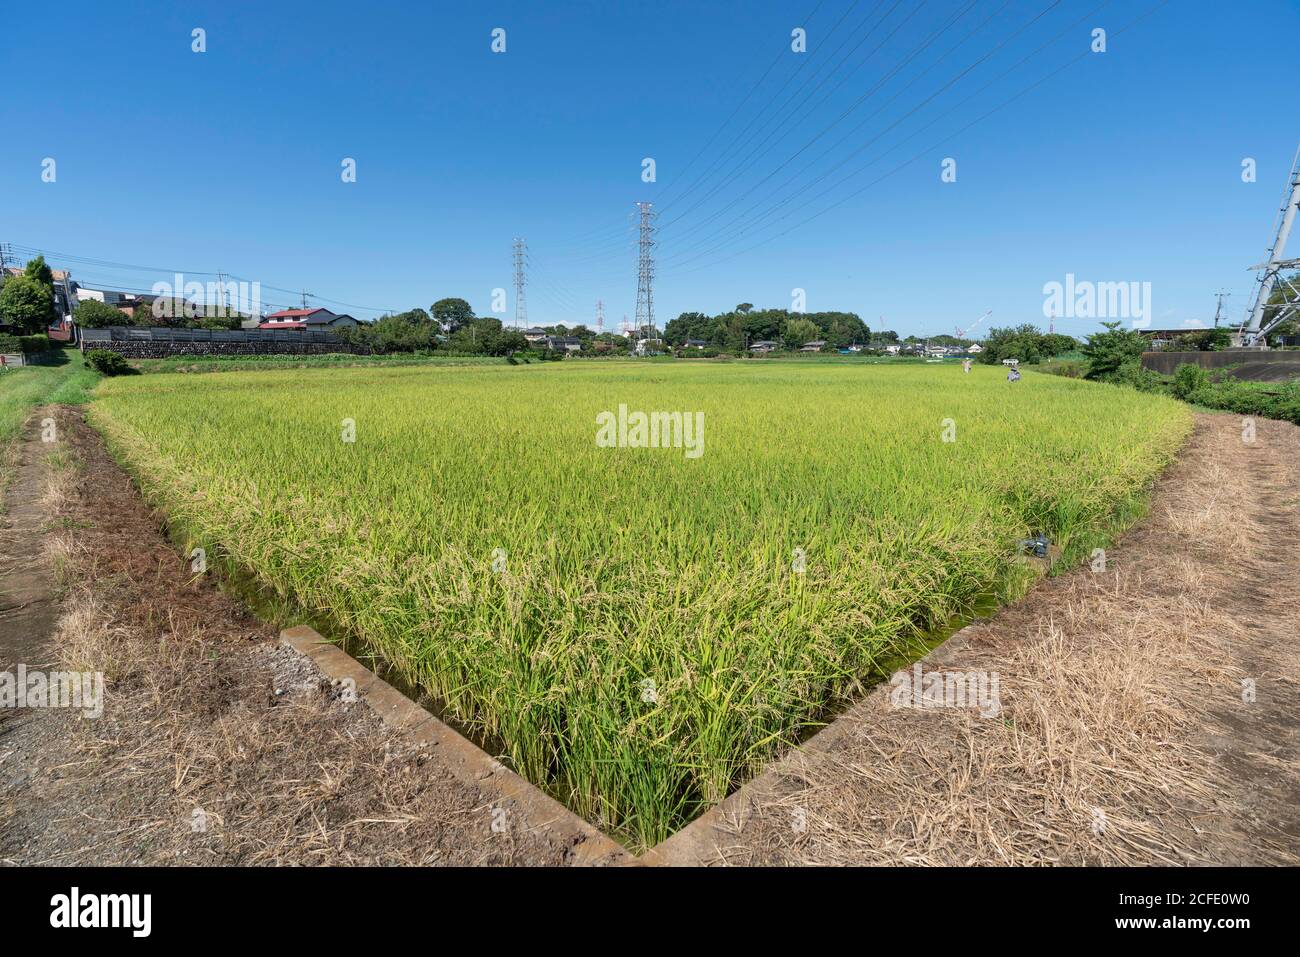 Campo de arroz en septiembre (finales de verano, principios de otoño), la ciudad de Isehara, Prefectura de Kanagawa, Japón. Foto de stock